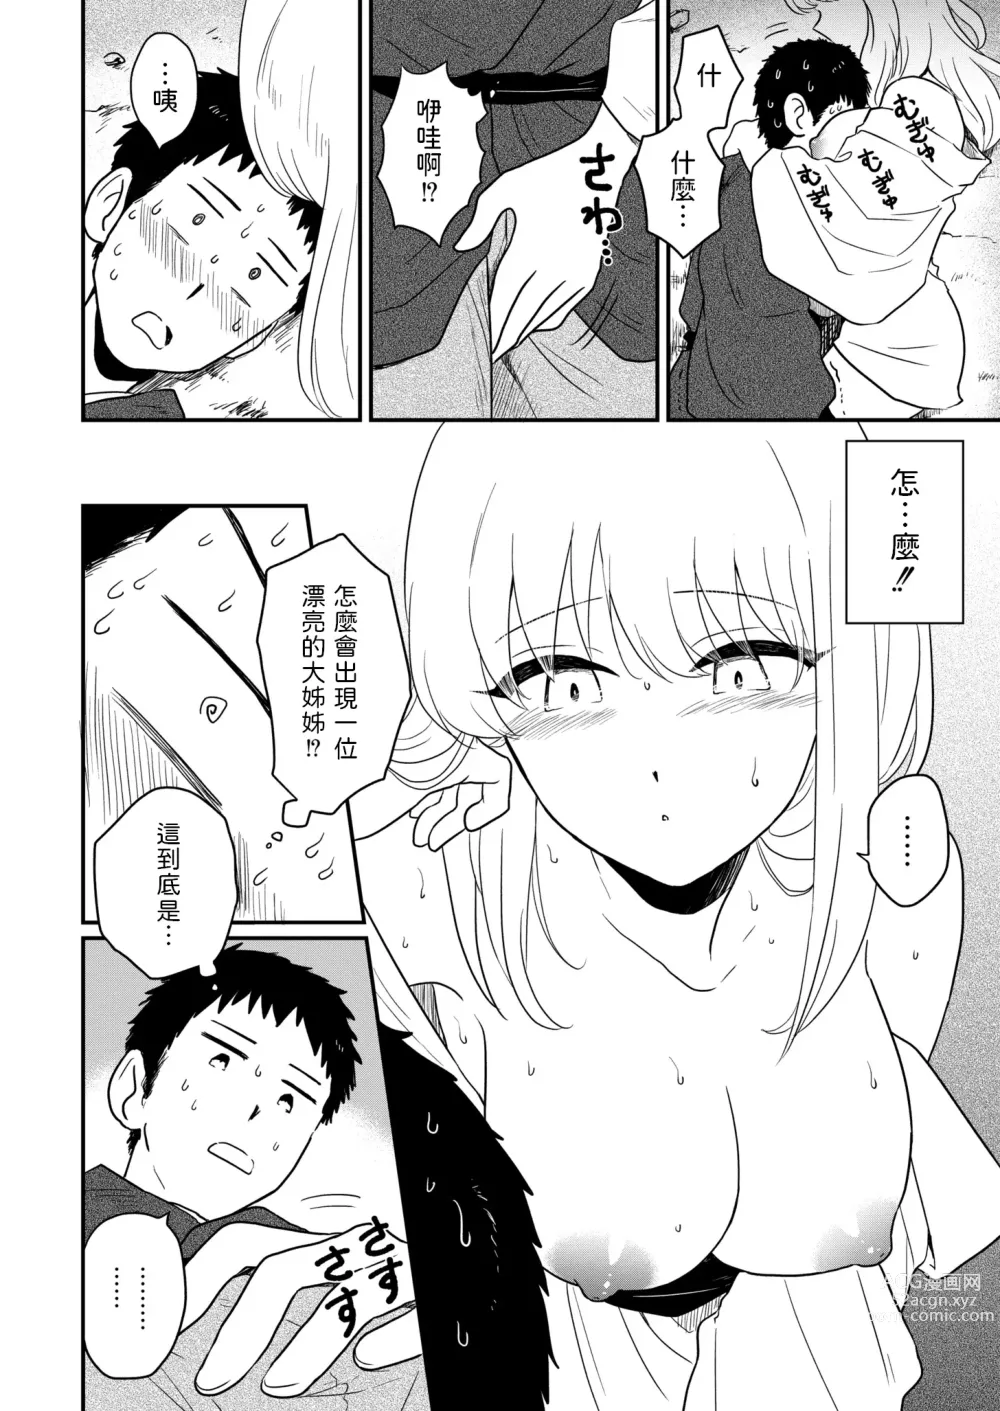 Page 4 of manga Kitsune